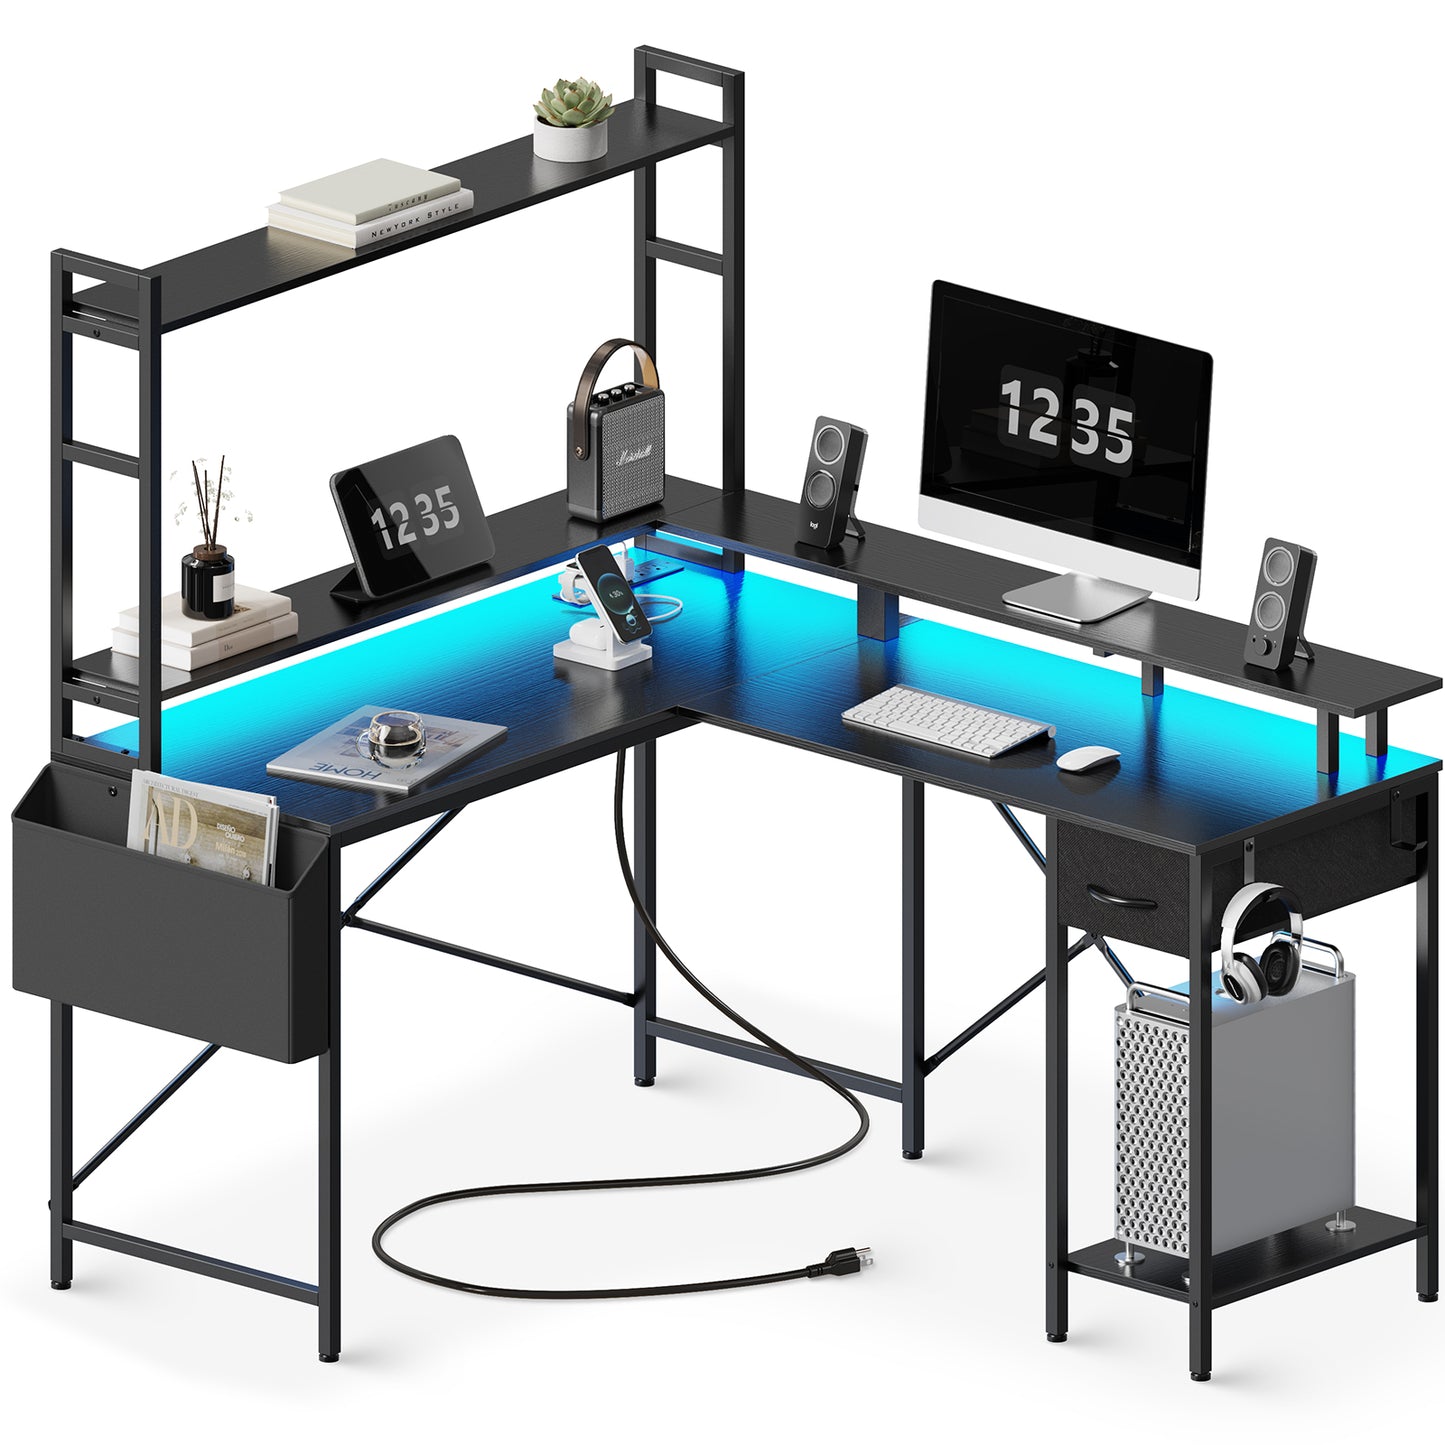 Huuger L Shaped Desk Gaming Desk with LED Lights & Power Outlets, Computer Desk with Storage Shelves, Black